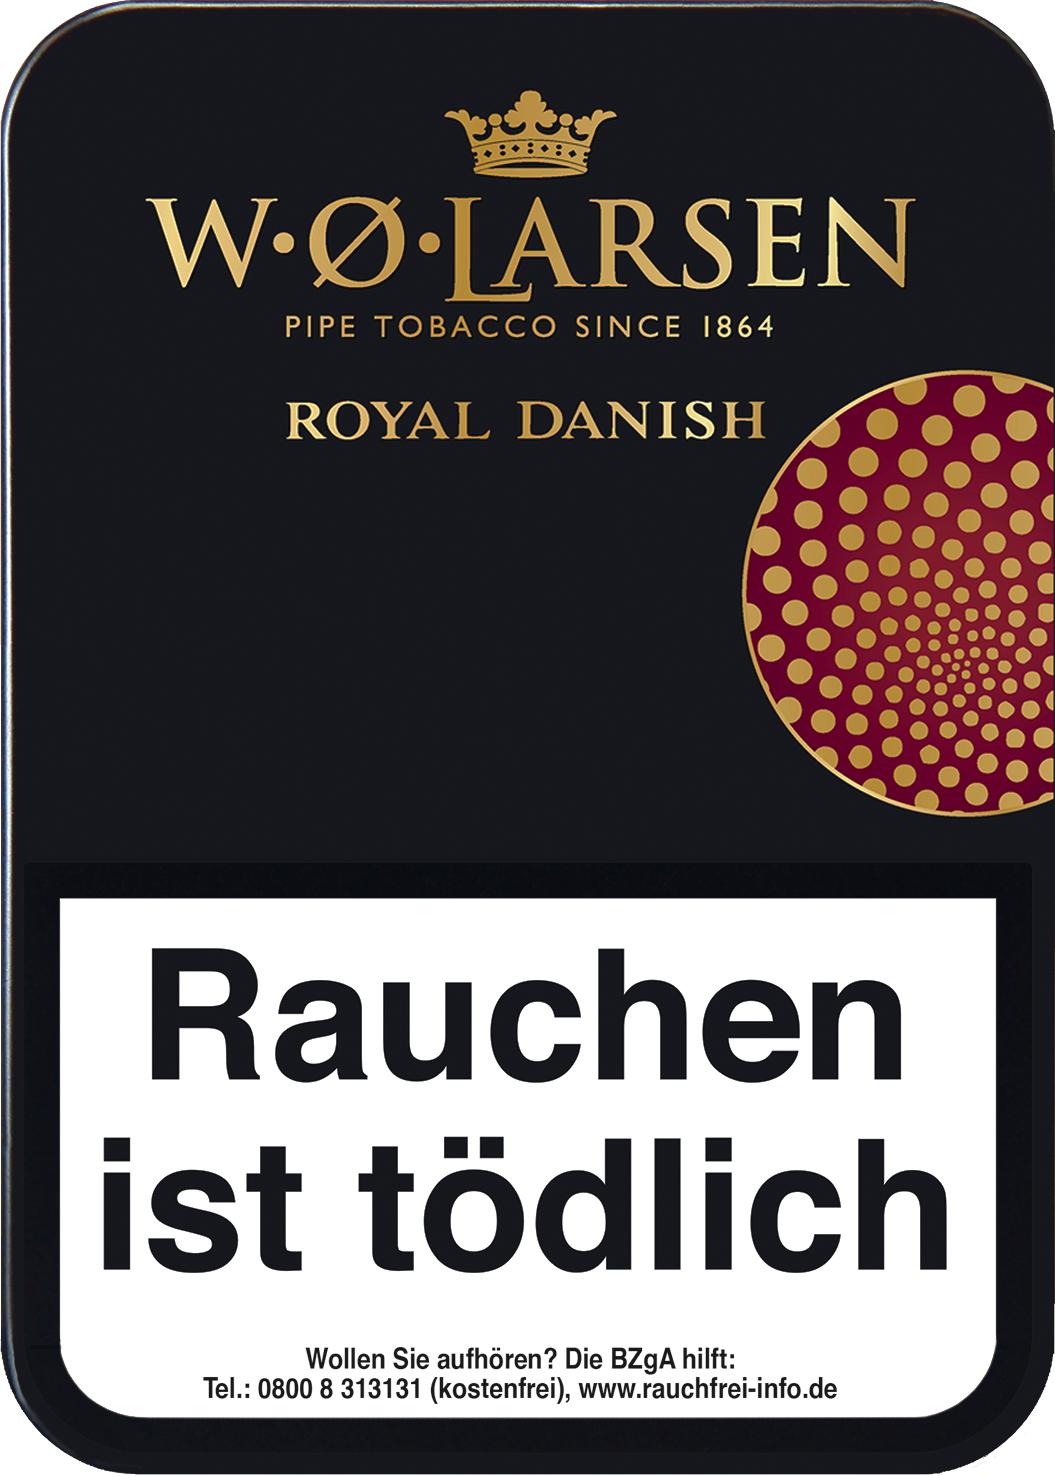 W.O. Larsen Royal Danish 1 x 100g Pfeifentabak 100g